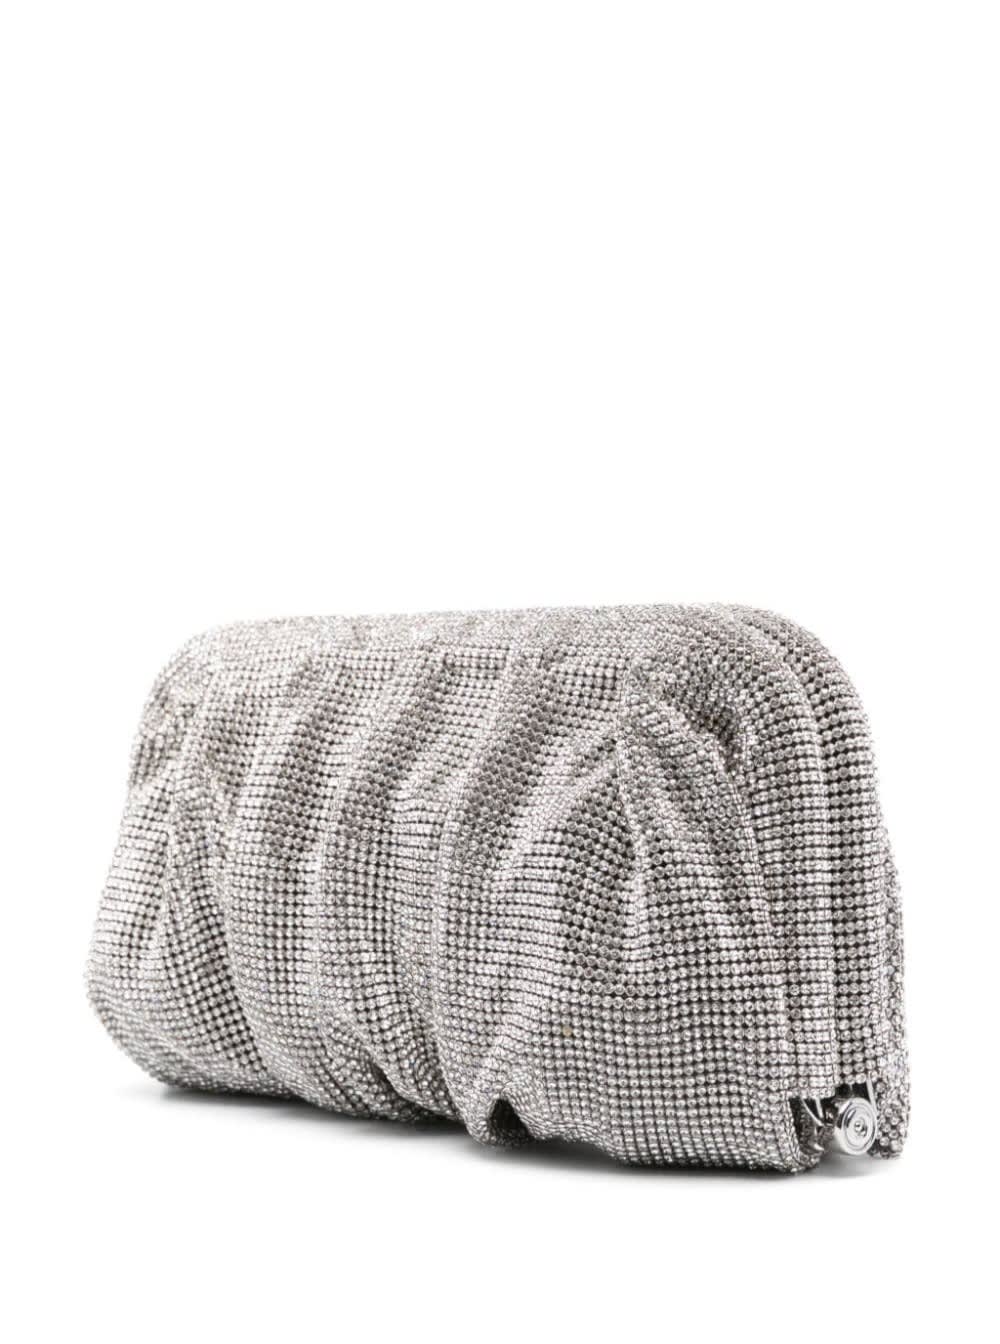 Shop Benedetta Bruzziches Venus La Grande Silver Clutch Bag In Fabric With Allover Crystals Woman